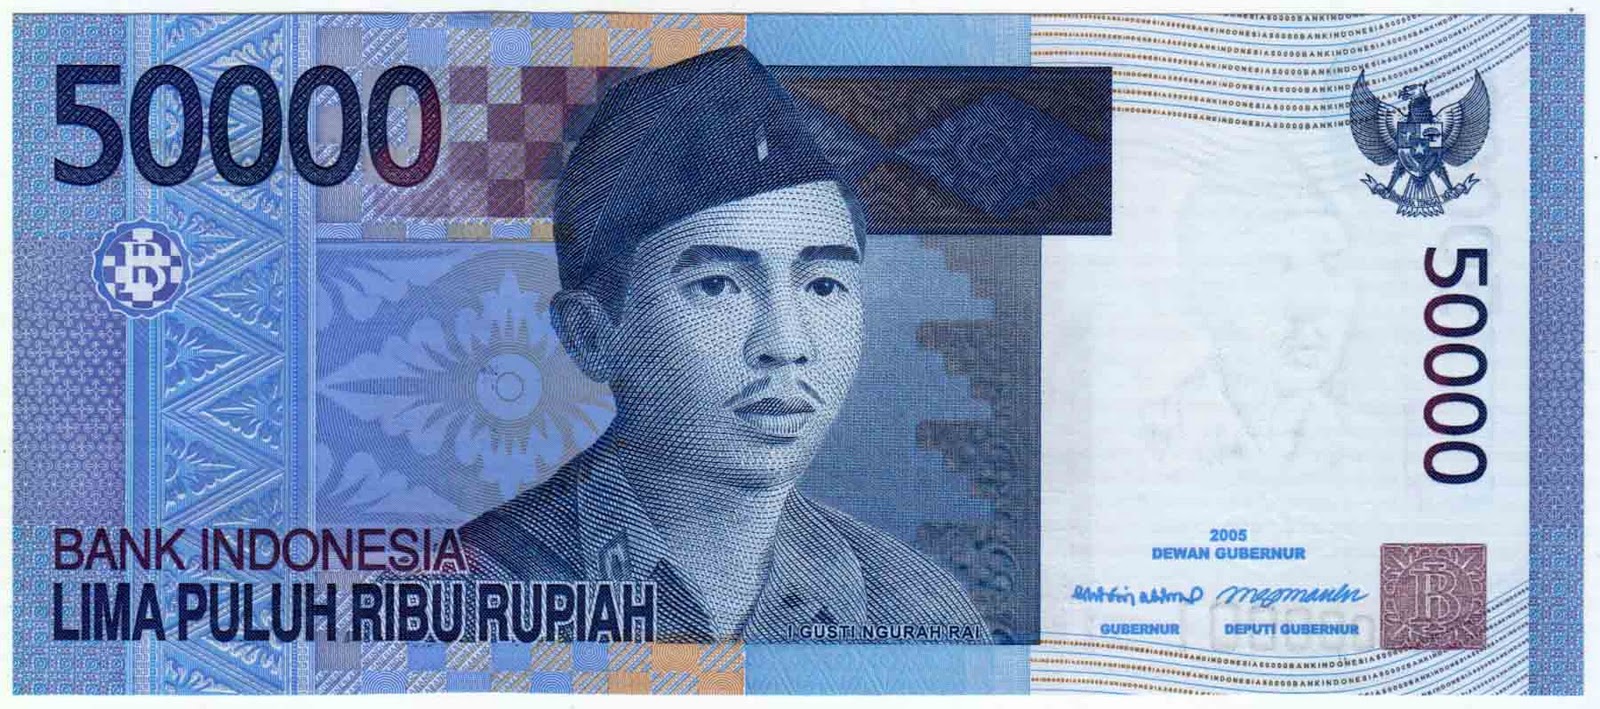 1st SITUS JUAL BELI UANG KUNO INDONESIA: No Seri Cantik Fancy Number